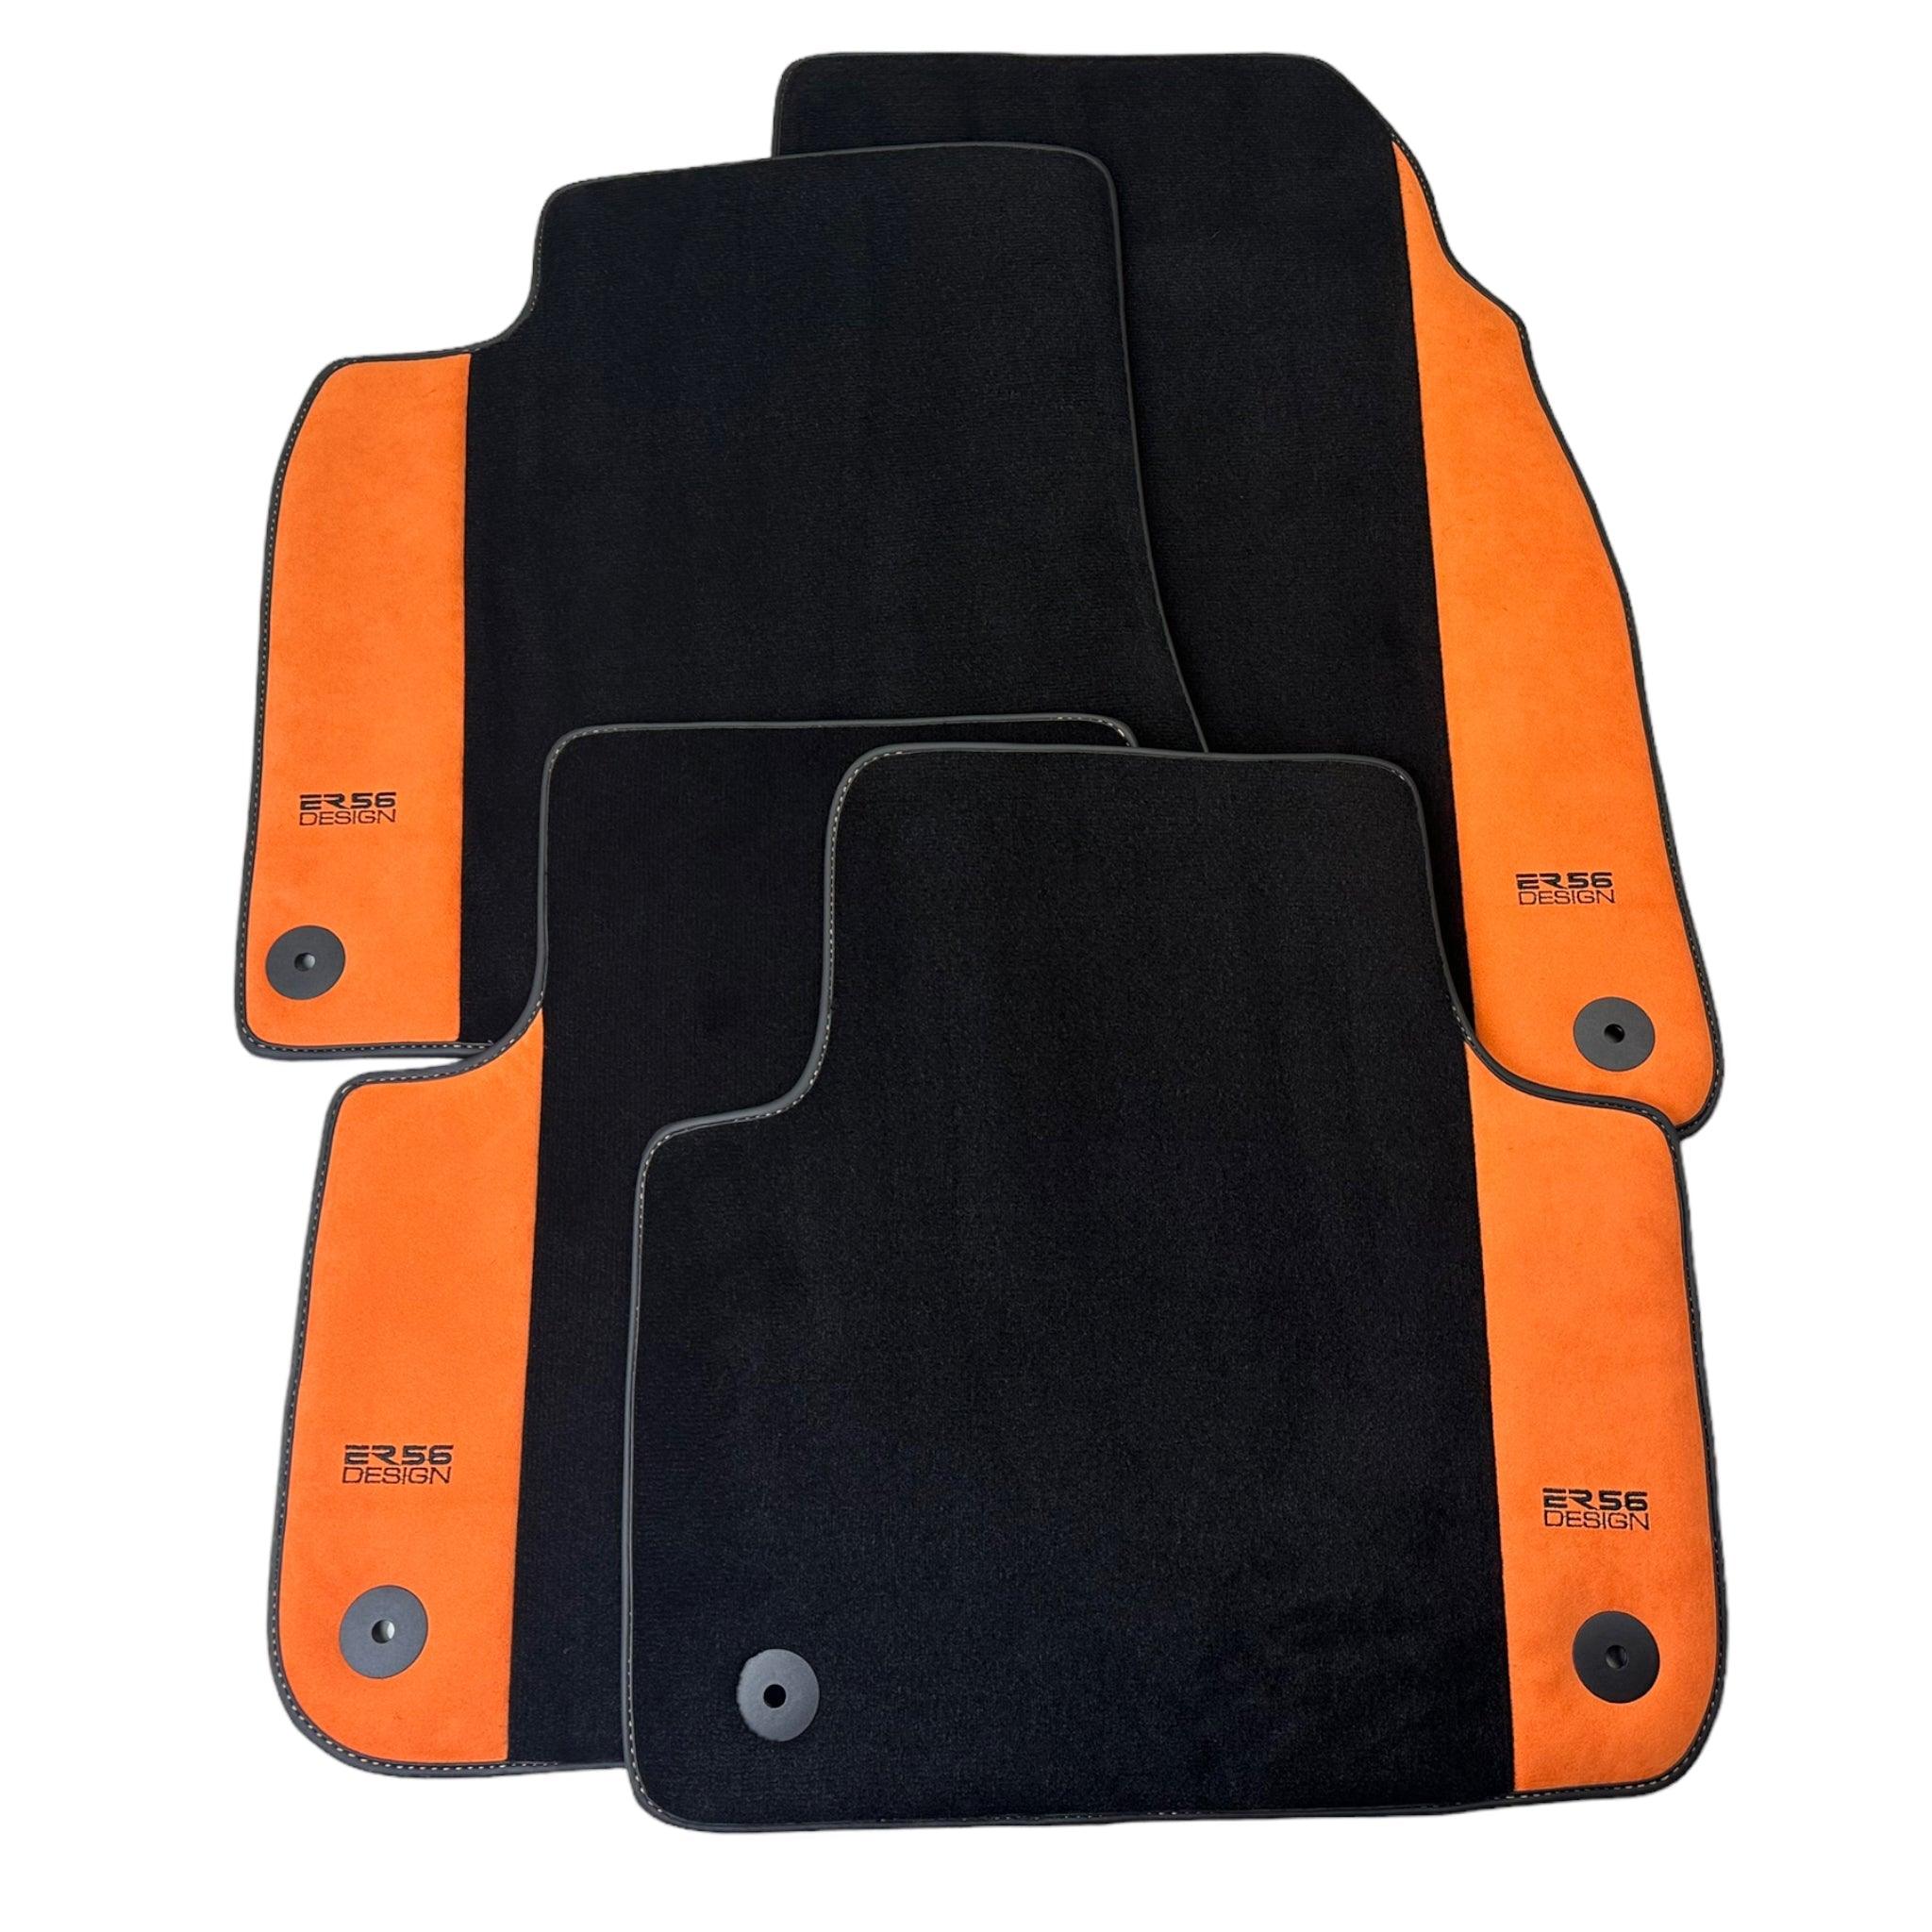 Black Floor Mats for Audi e-tron Sportback (2020-2024) Orange Alcantara | ER56 Design